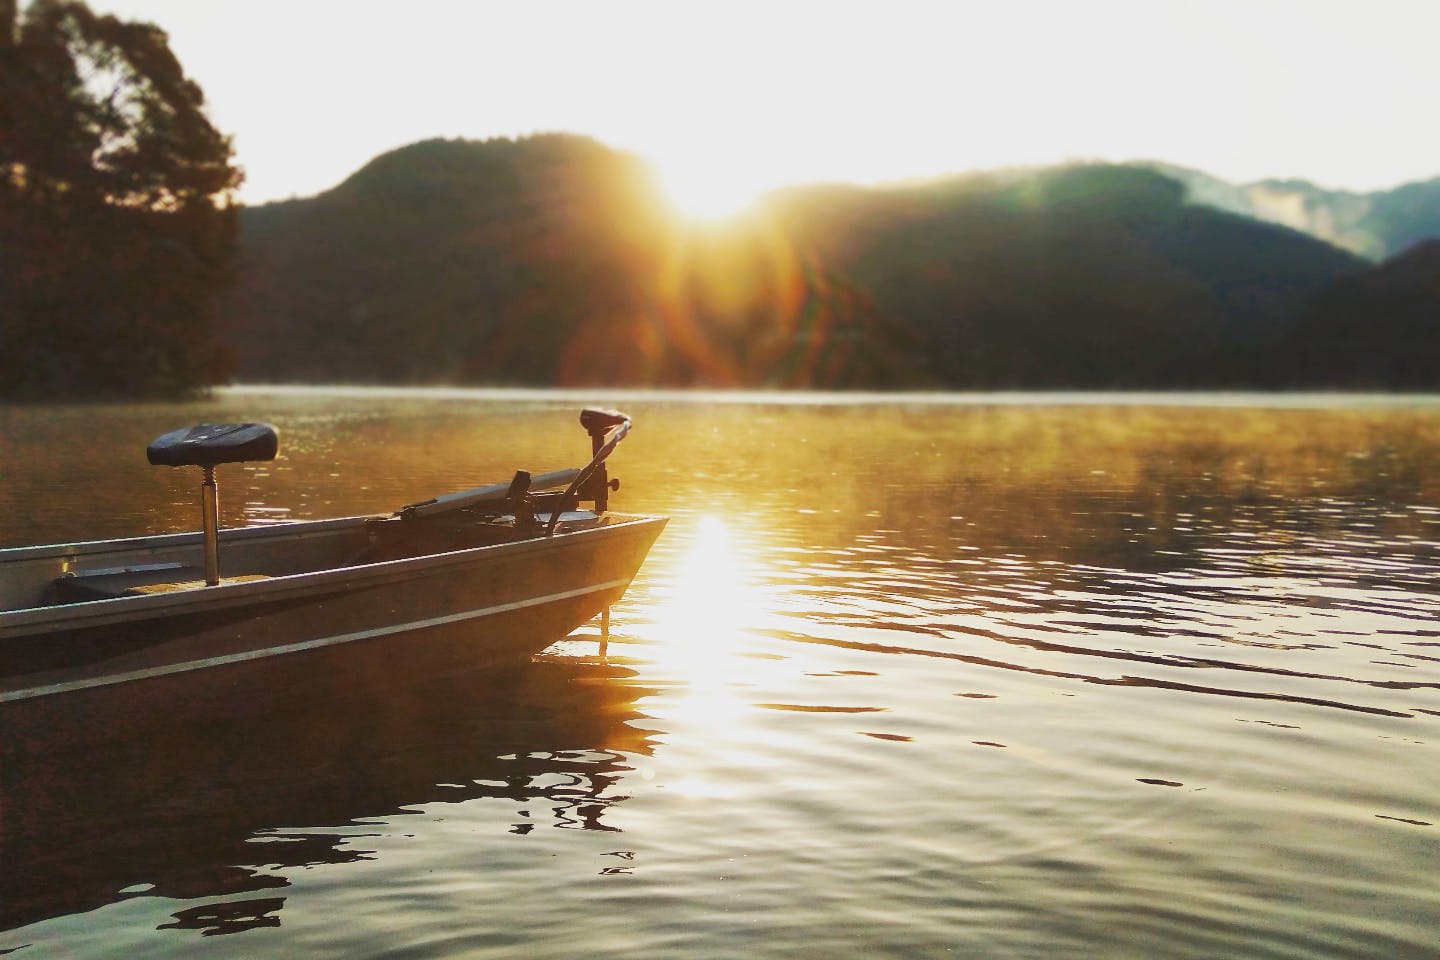 山口 萩 レンタルボート 阿武湖の景色を楽しみながら電動レンタルボート操船体験 初級 アソビュー